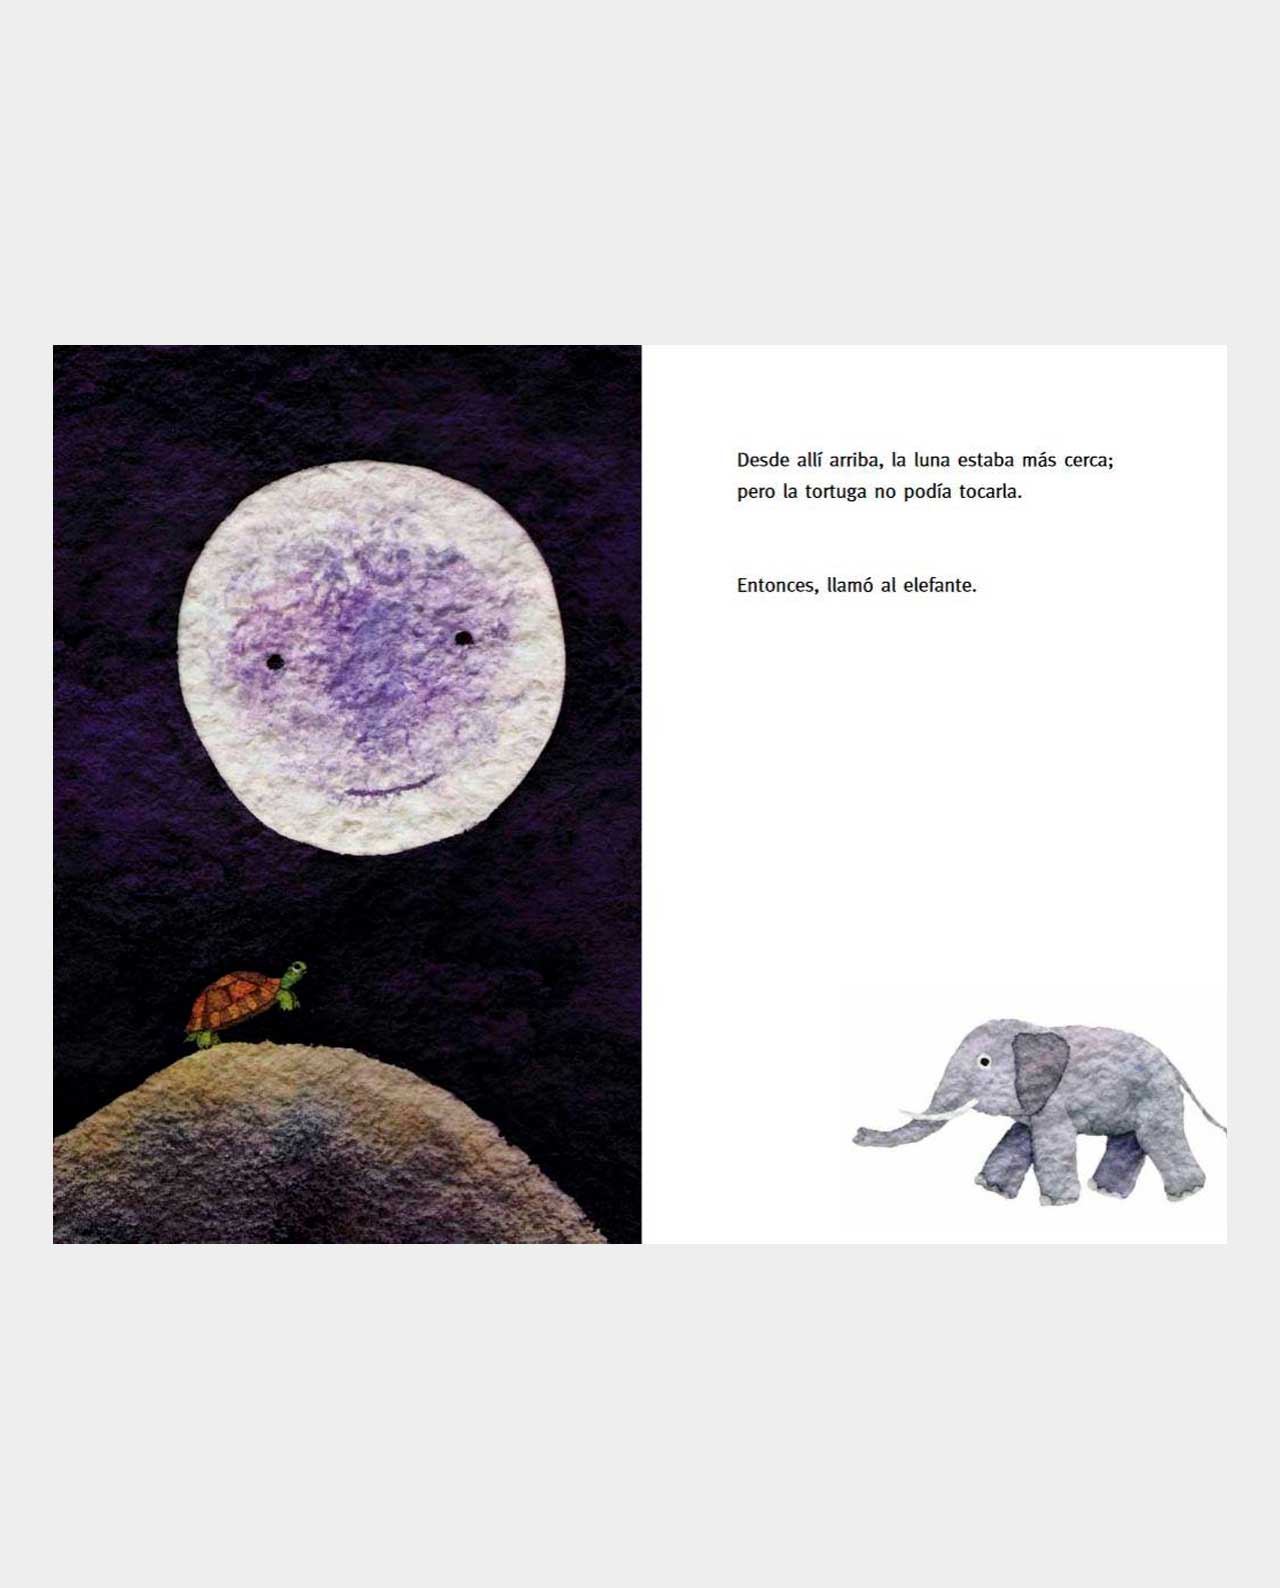 A qué sabe la Luna? Libro para niños pequeños